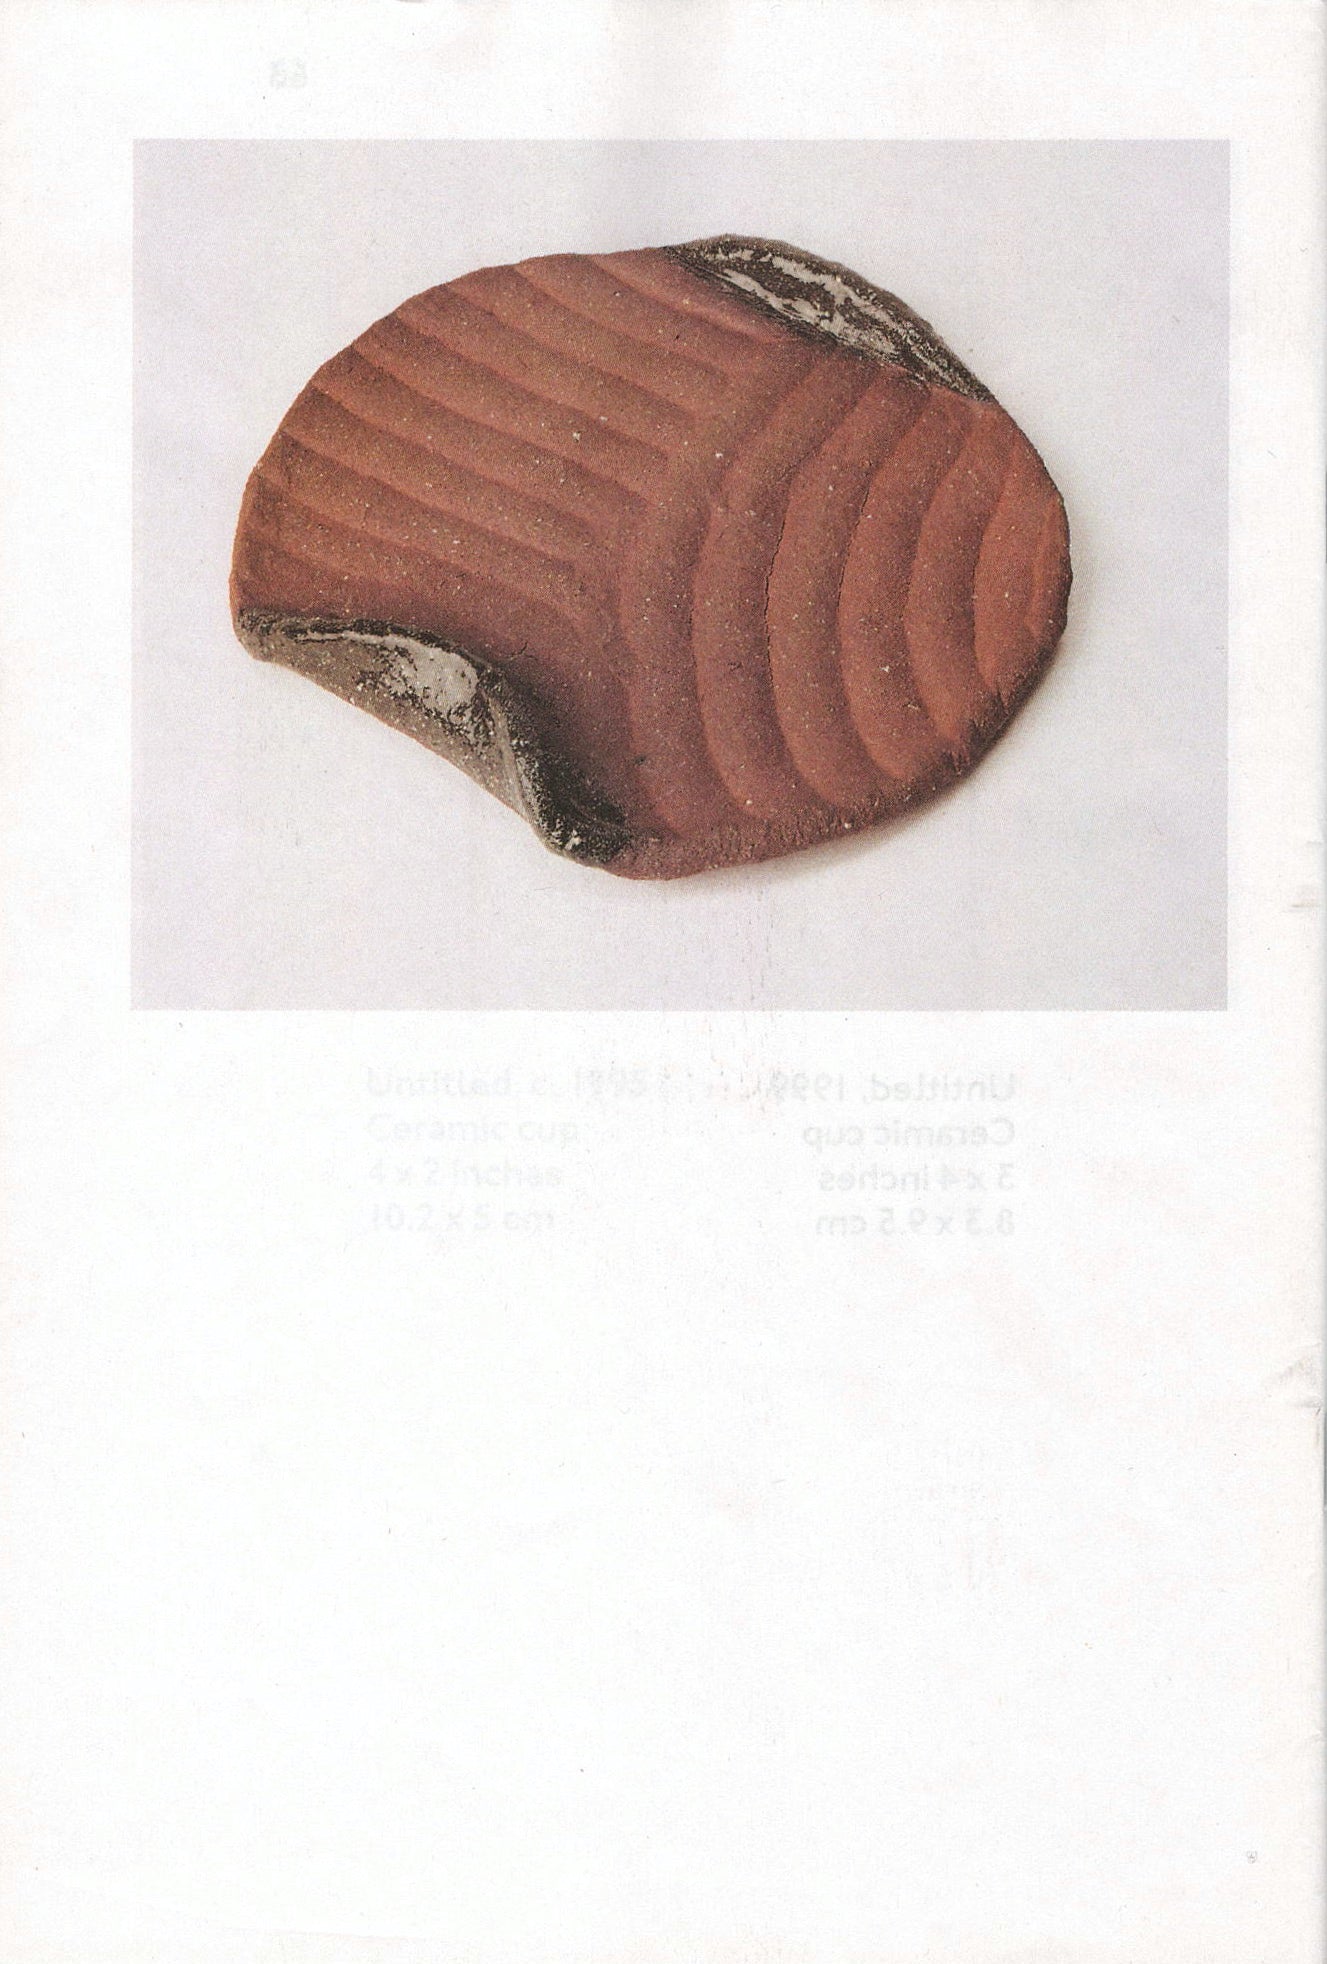 JB Blunk - Cups, plates, bowls & sculptures: ceramics 1950–1999 (3rd Edition)